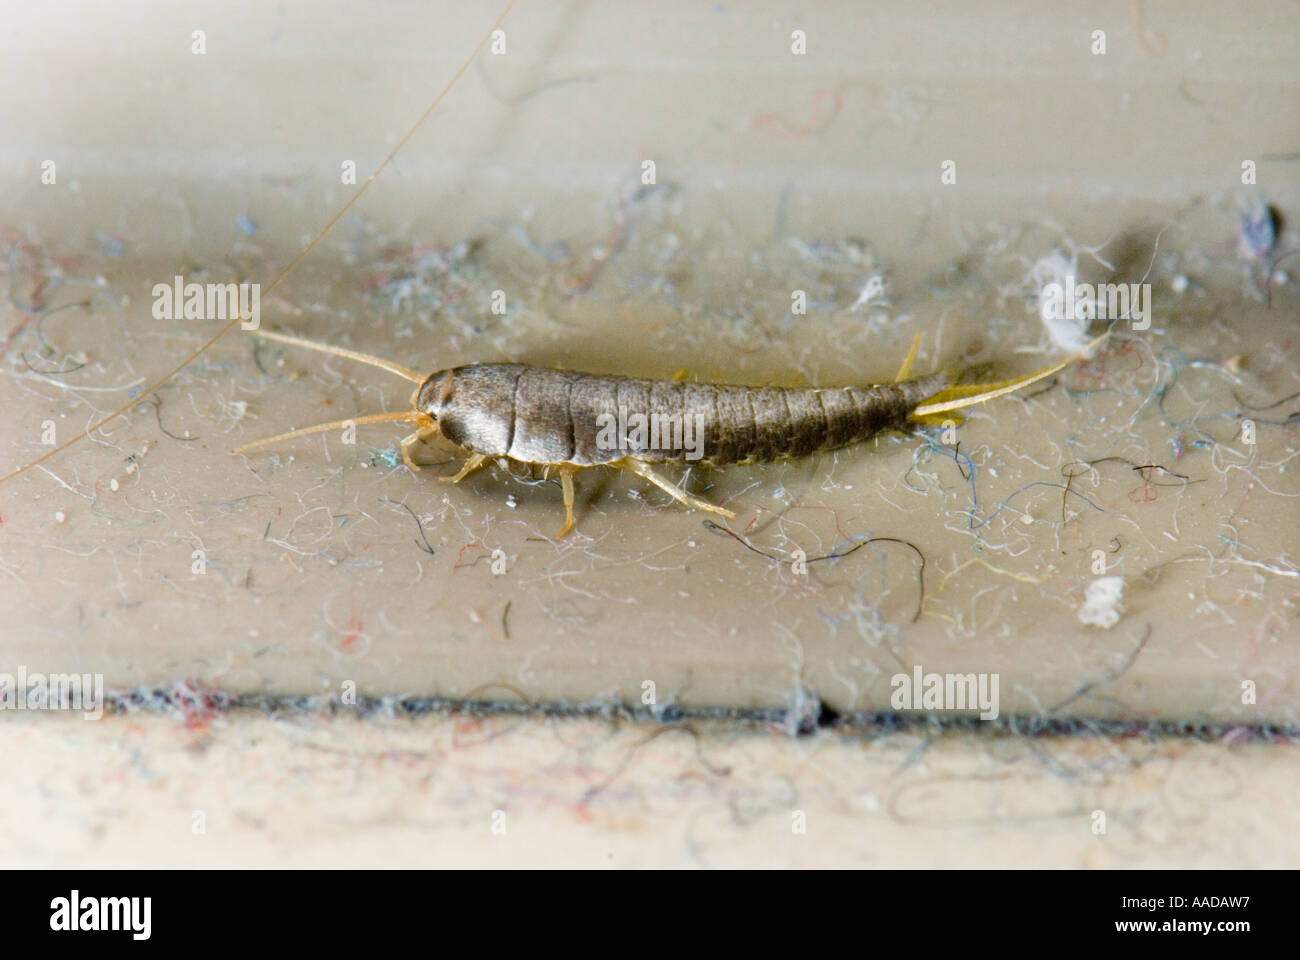 1 Uno Lardoglyphus saccharina comunemente chiamato fishmoth silverfish piccoli insetti wingless CLOSEUP Close up macro makro mikro micro Foto Stock